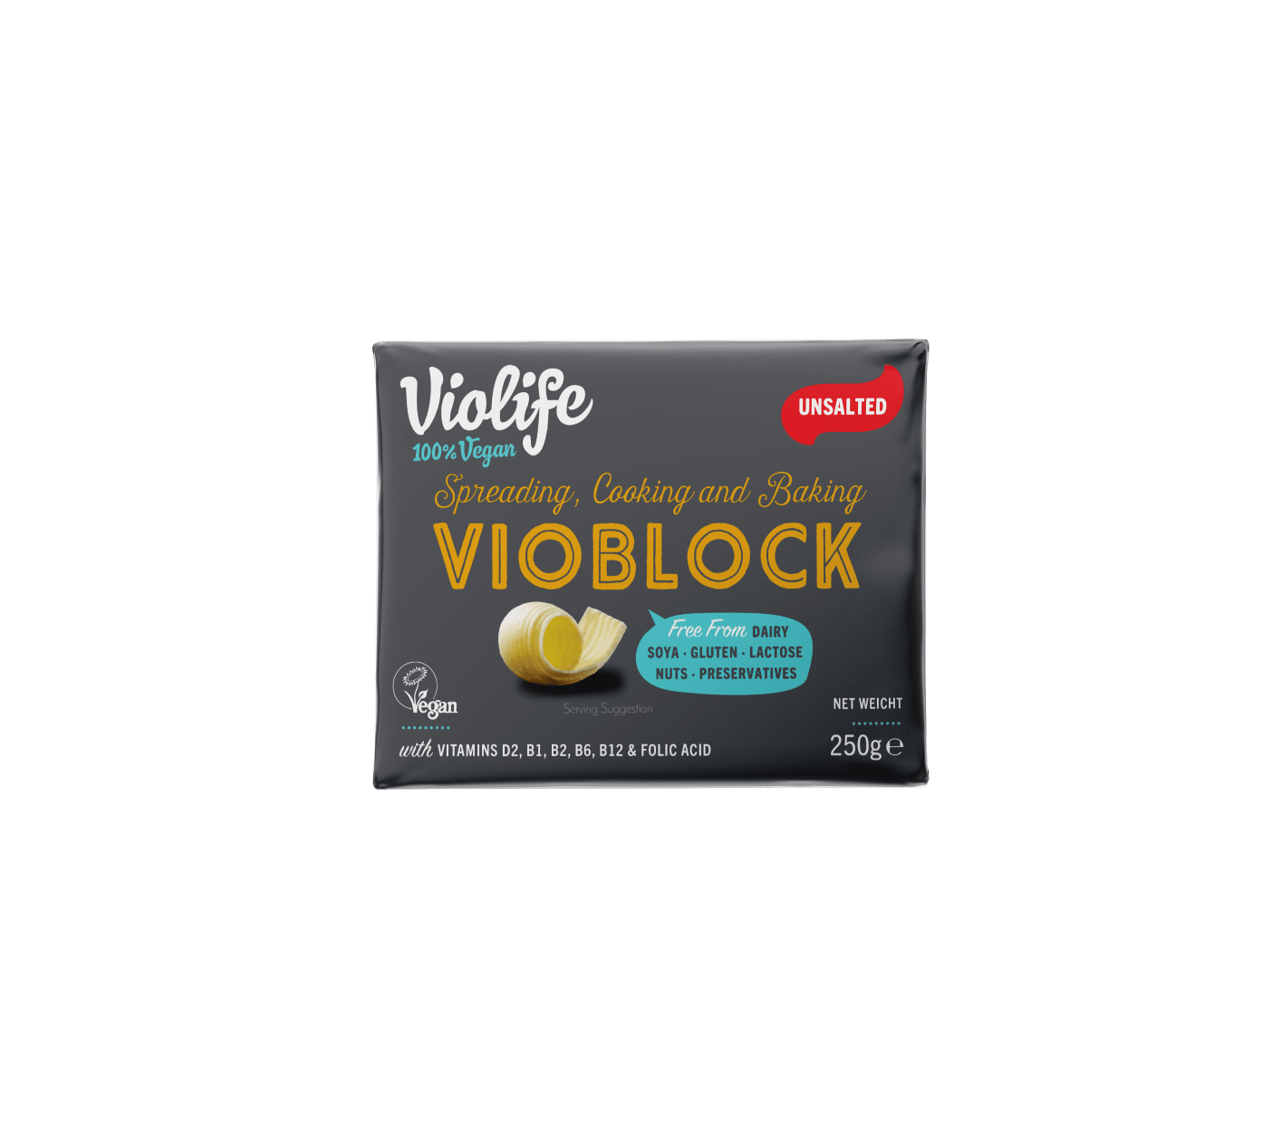 Violife Vioblock On(gezouten) - 250g 